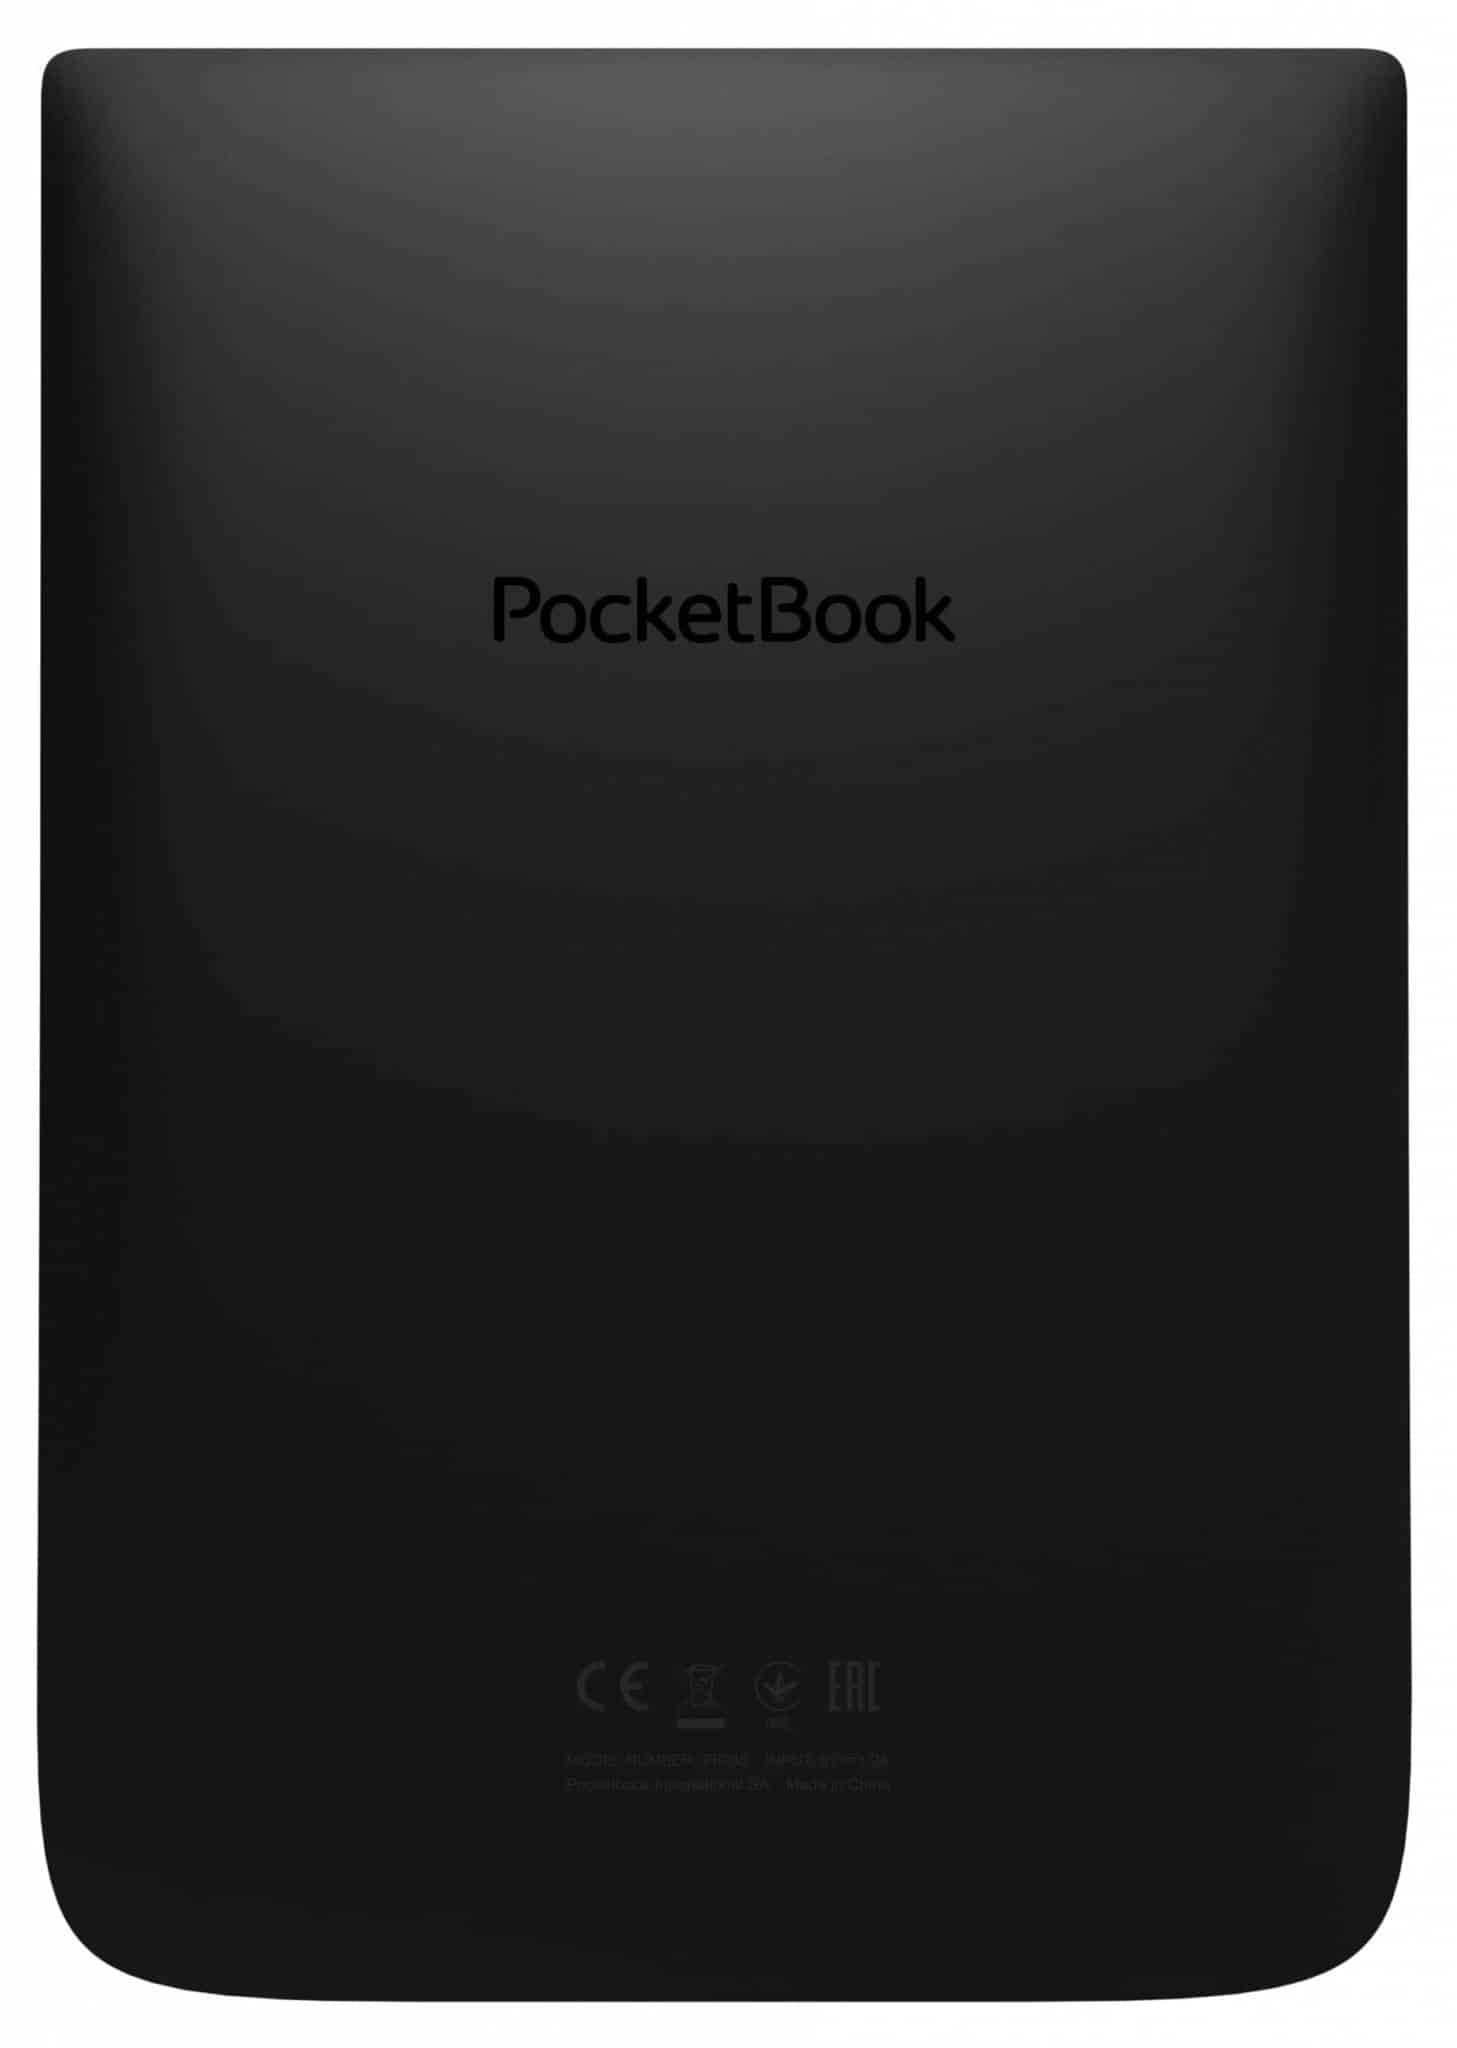 Pocketbook Inkpad 3 - 7.8 inch e-reader - 2